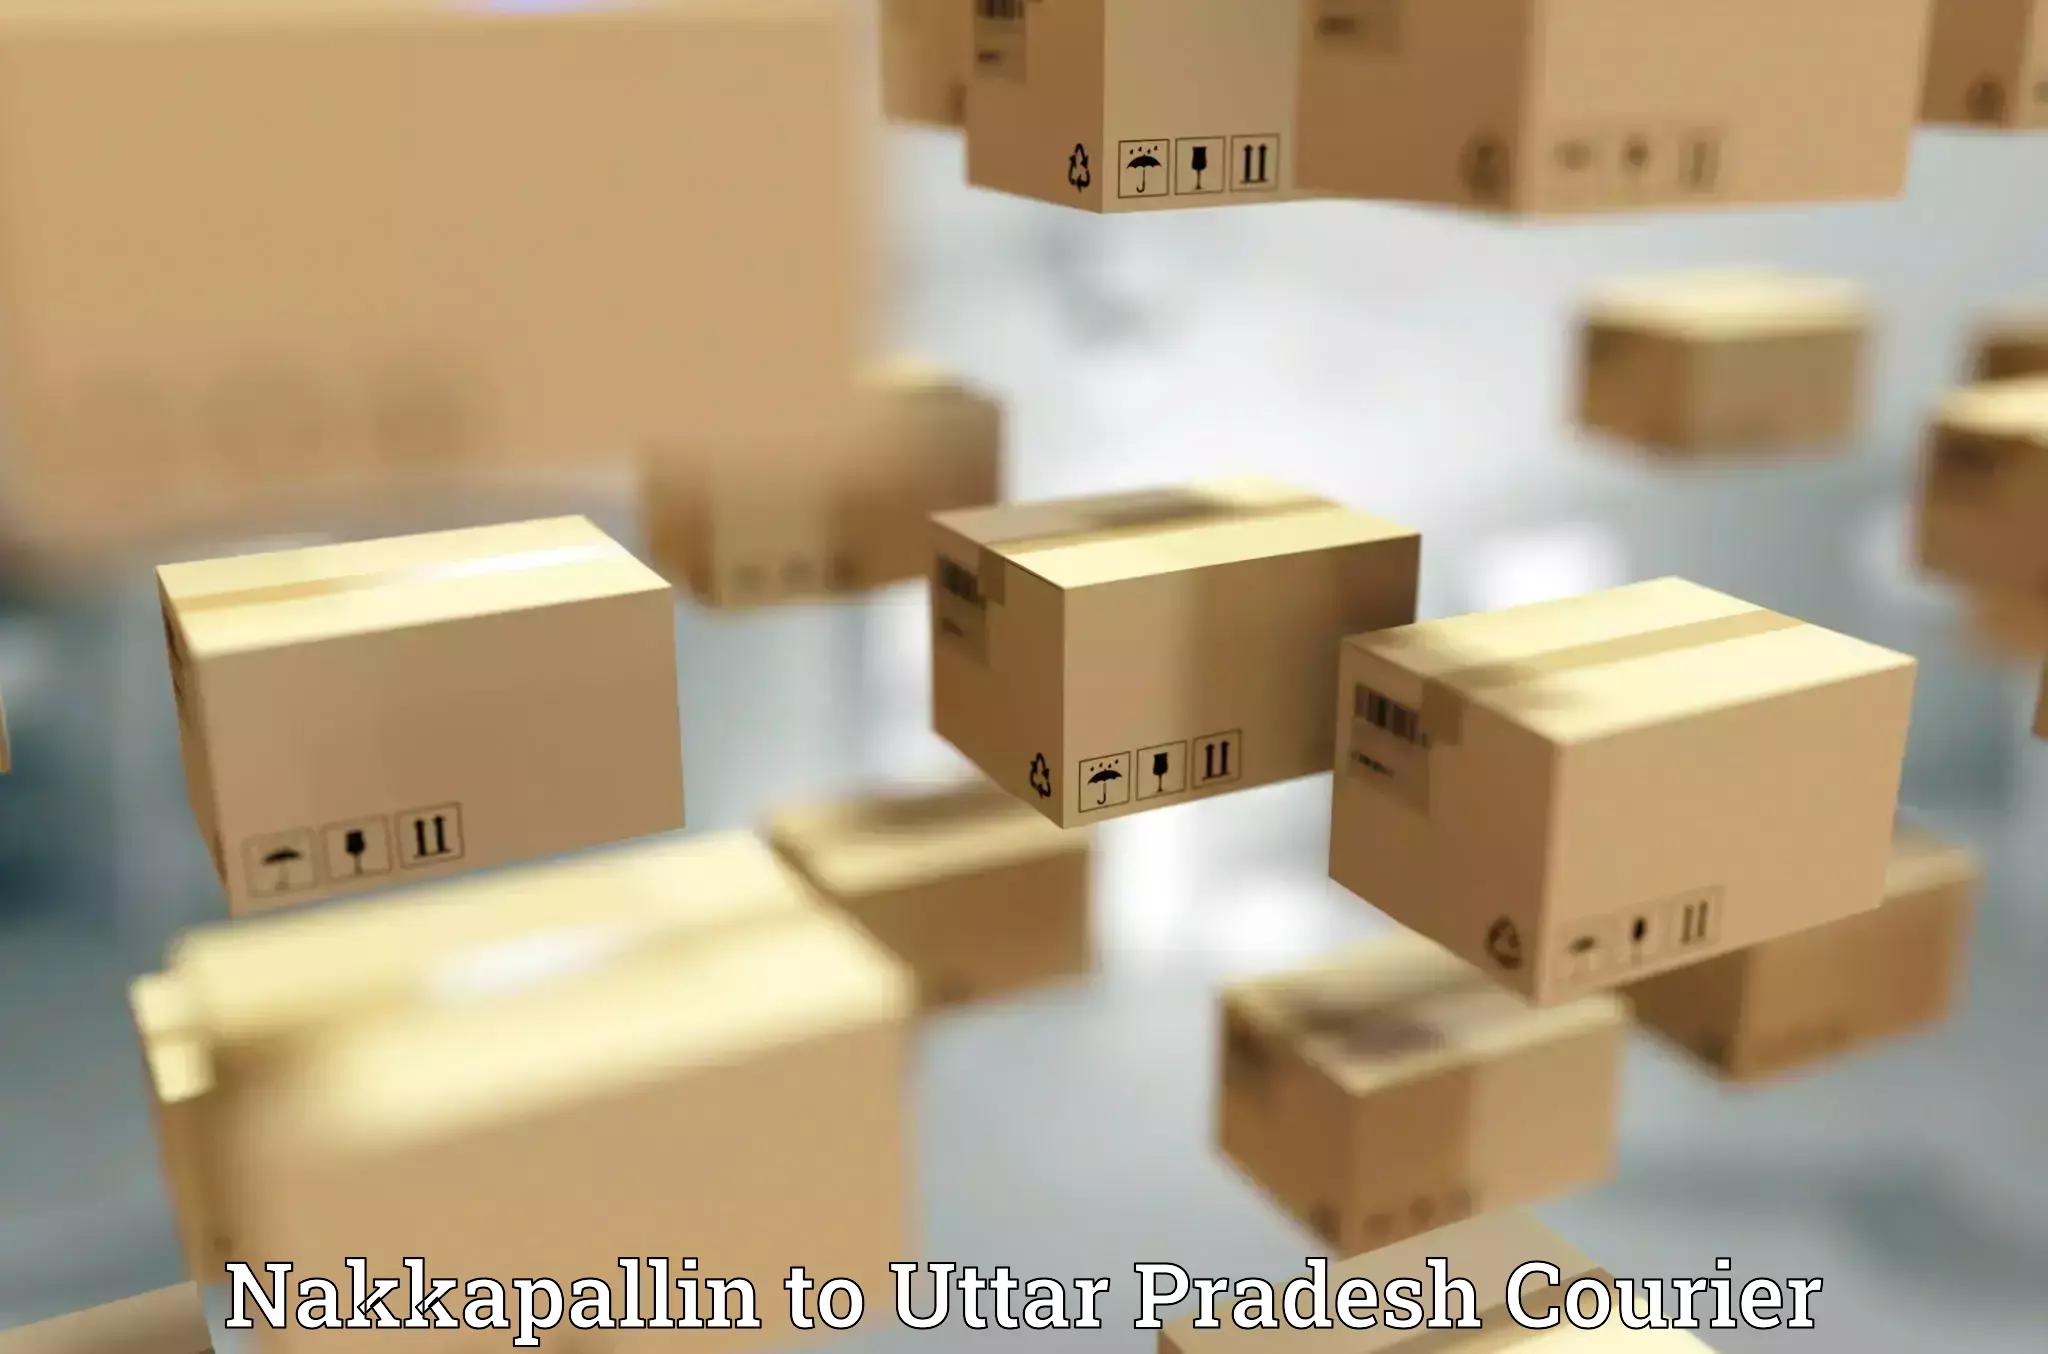 Courier insurance Nakkapallin to Uttar Pradesh